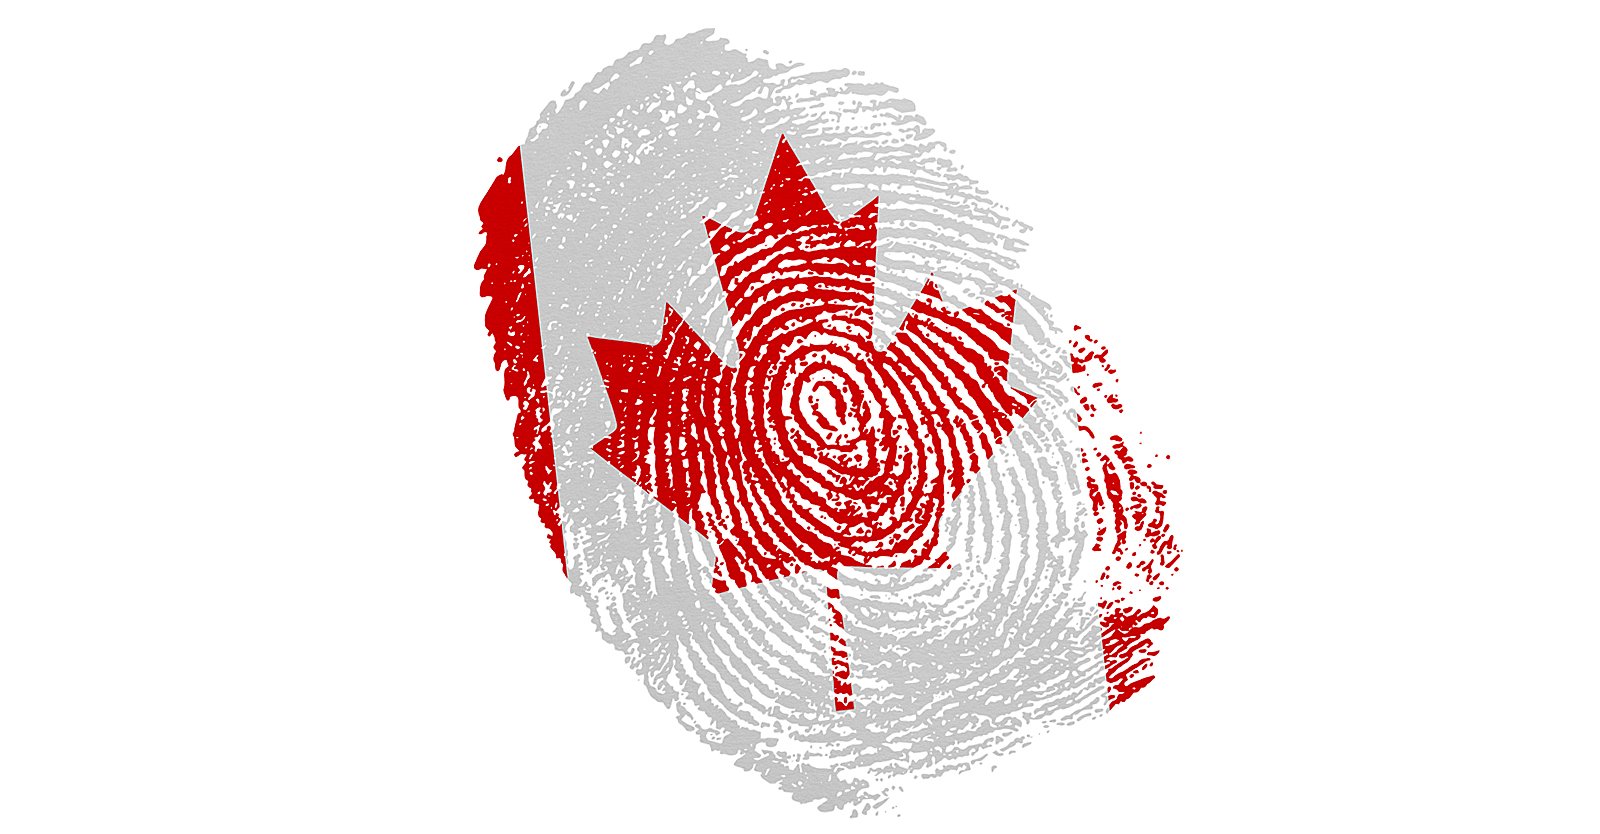 WEF की मदद से, कनाडा ने संघीय डिजिटल पहचान कार्यक्रम शुरू किया